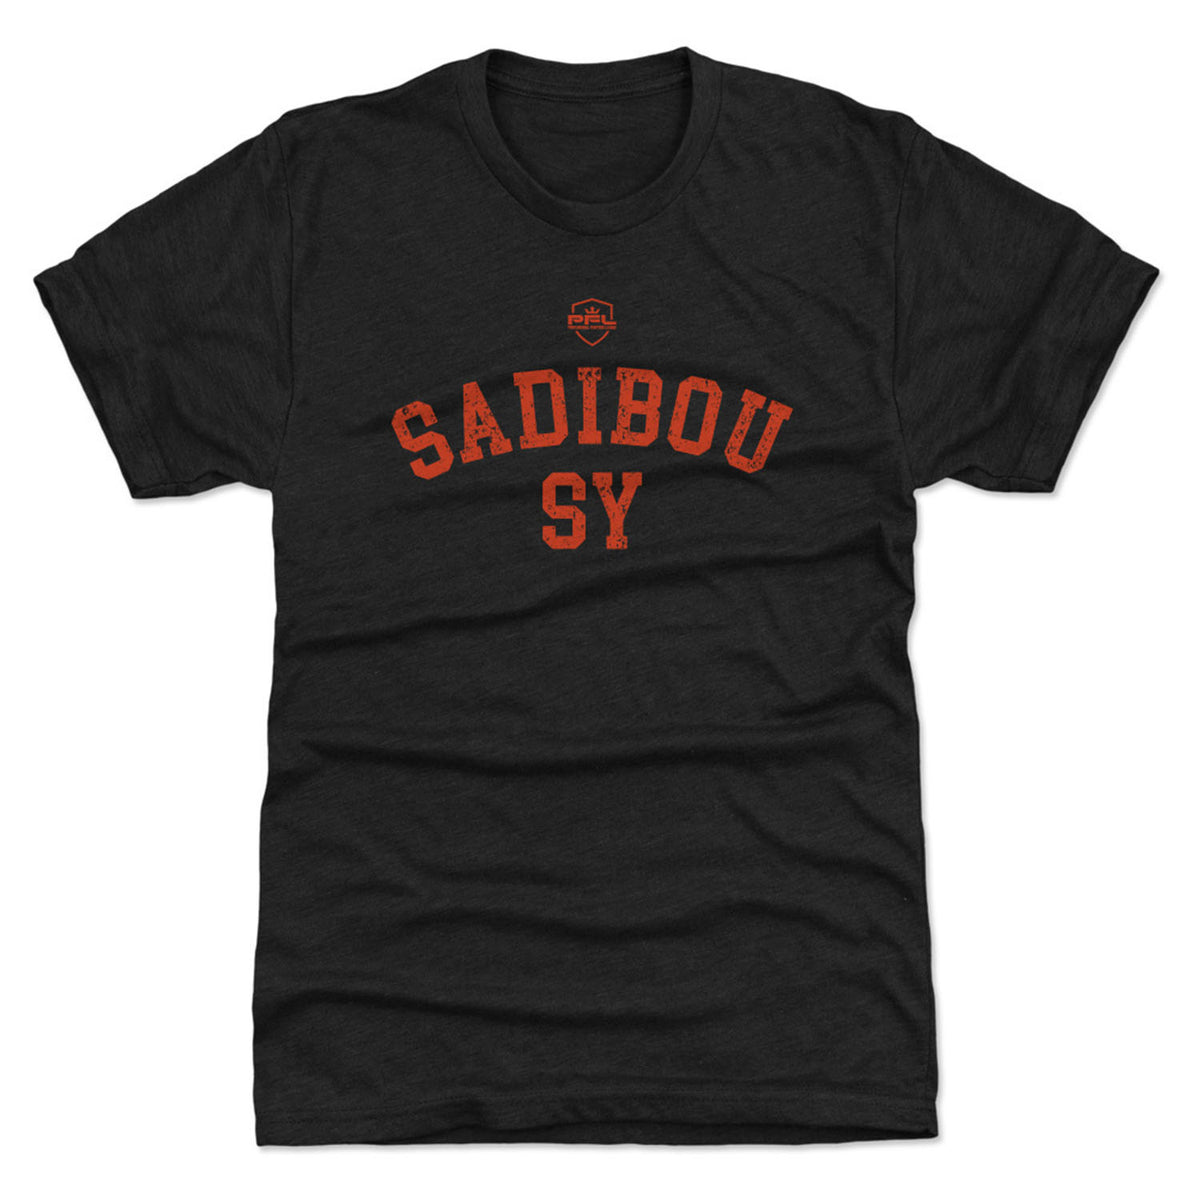 PFL Black Sadibou Sy T-Shirt - Front View